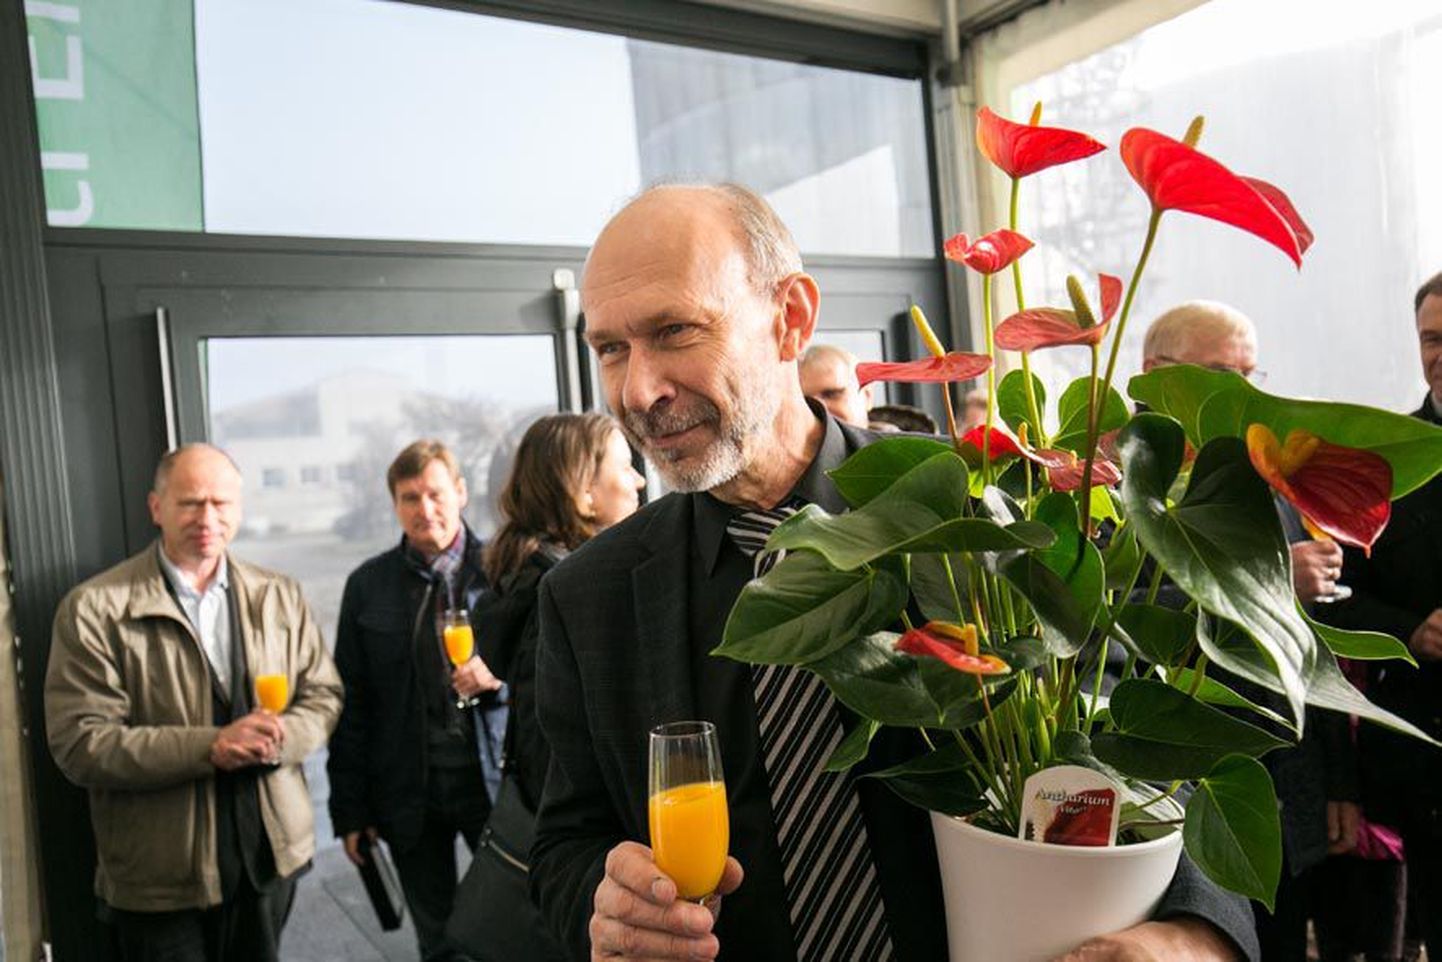 Neli aastat tagasi võttis Andres Alusalu Paide koostootmisjaama avamisel vastu lilli. Nüüd otsustas mees oma osaluse Eesti Energiale müüa.